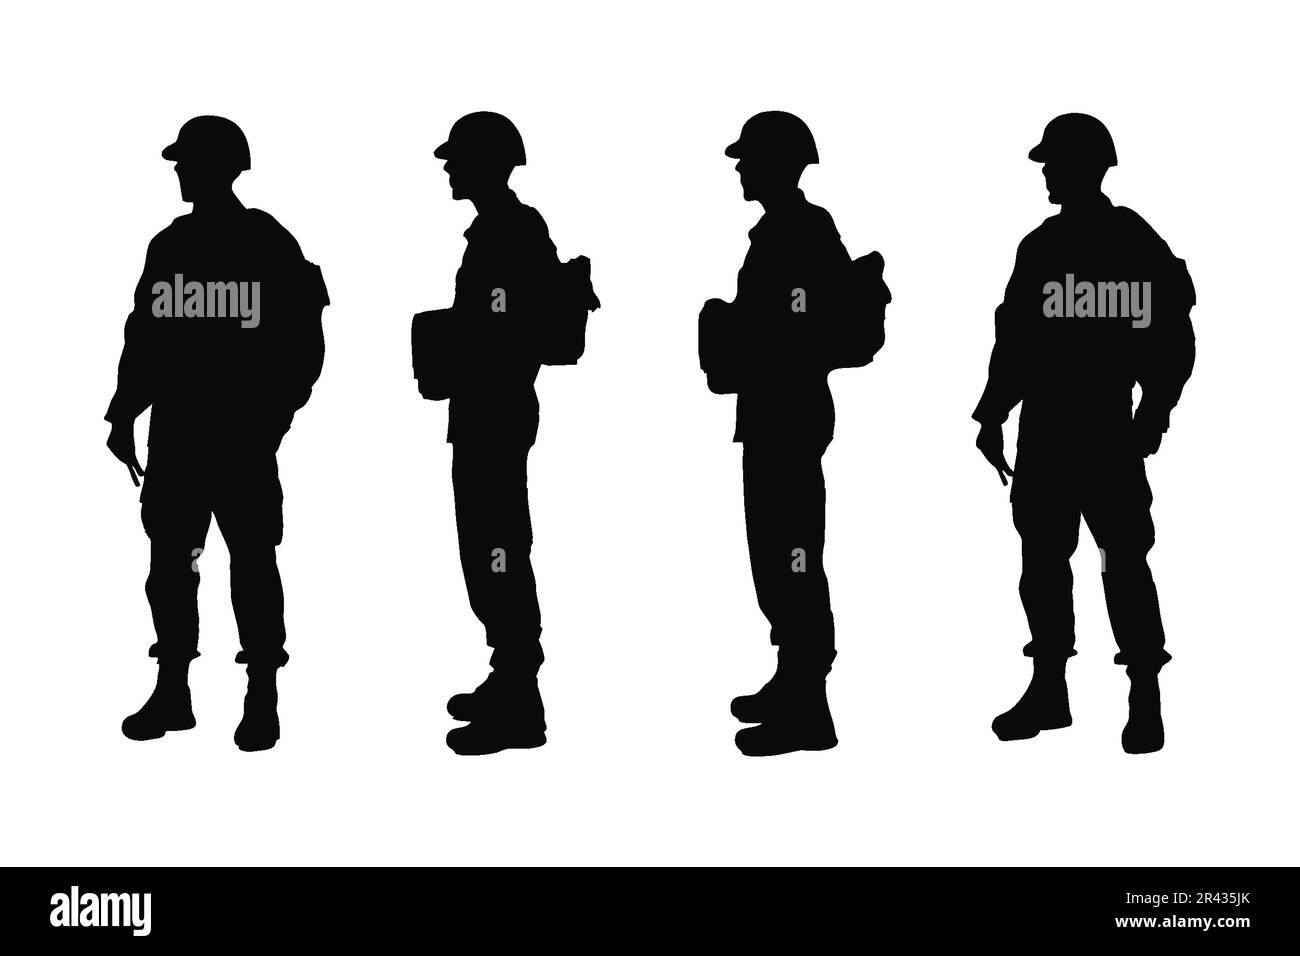 Männlicher Soldat mit Waffensilhouette, Vektor gesetzt. Anonyme männliche Armeen ohne Gesichter, die in verschiedenen Positionen stehen. Moderner Infanterie-Soldat Stock Vektor